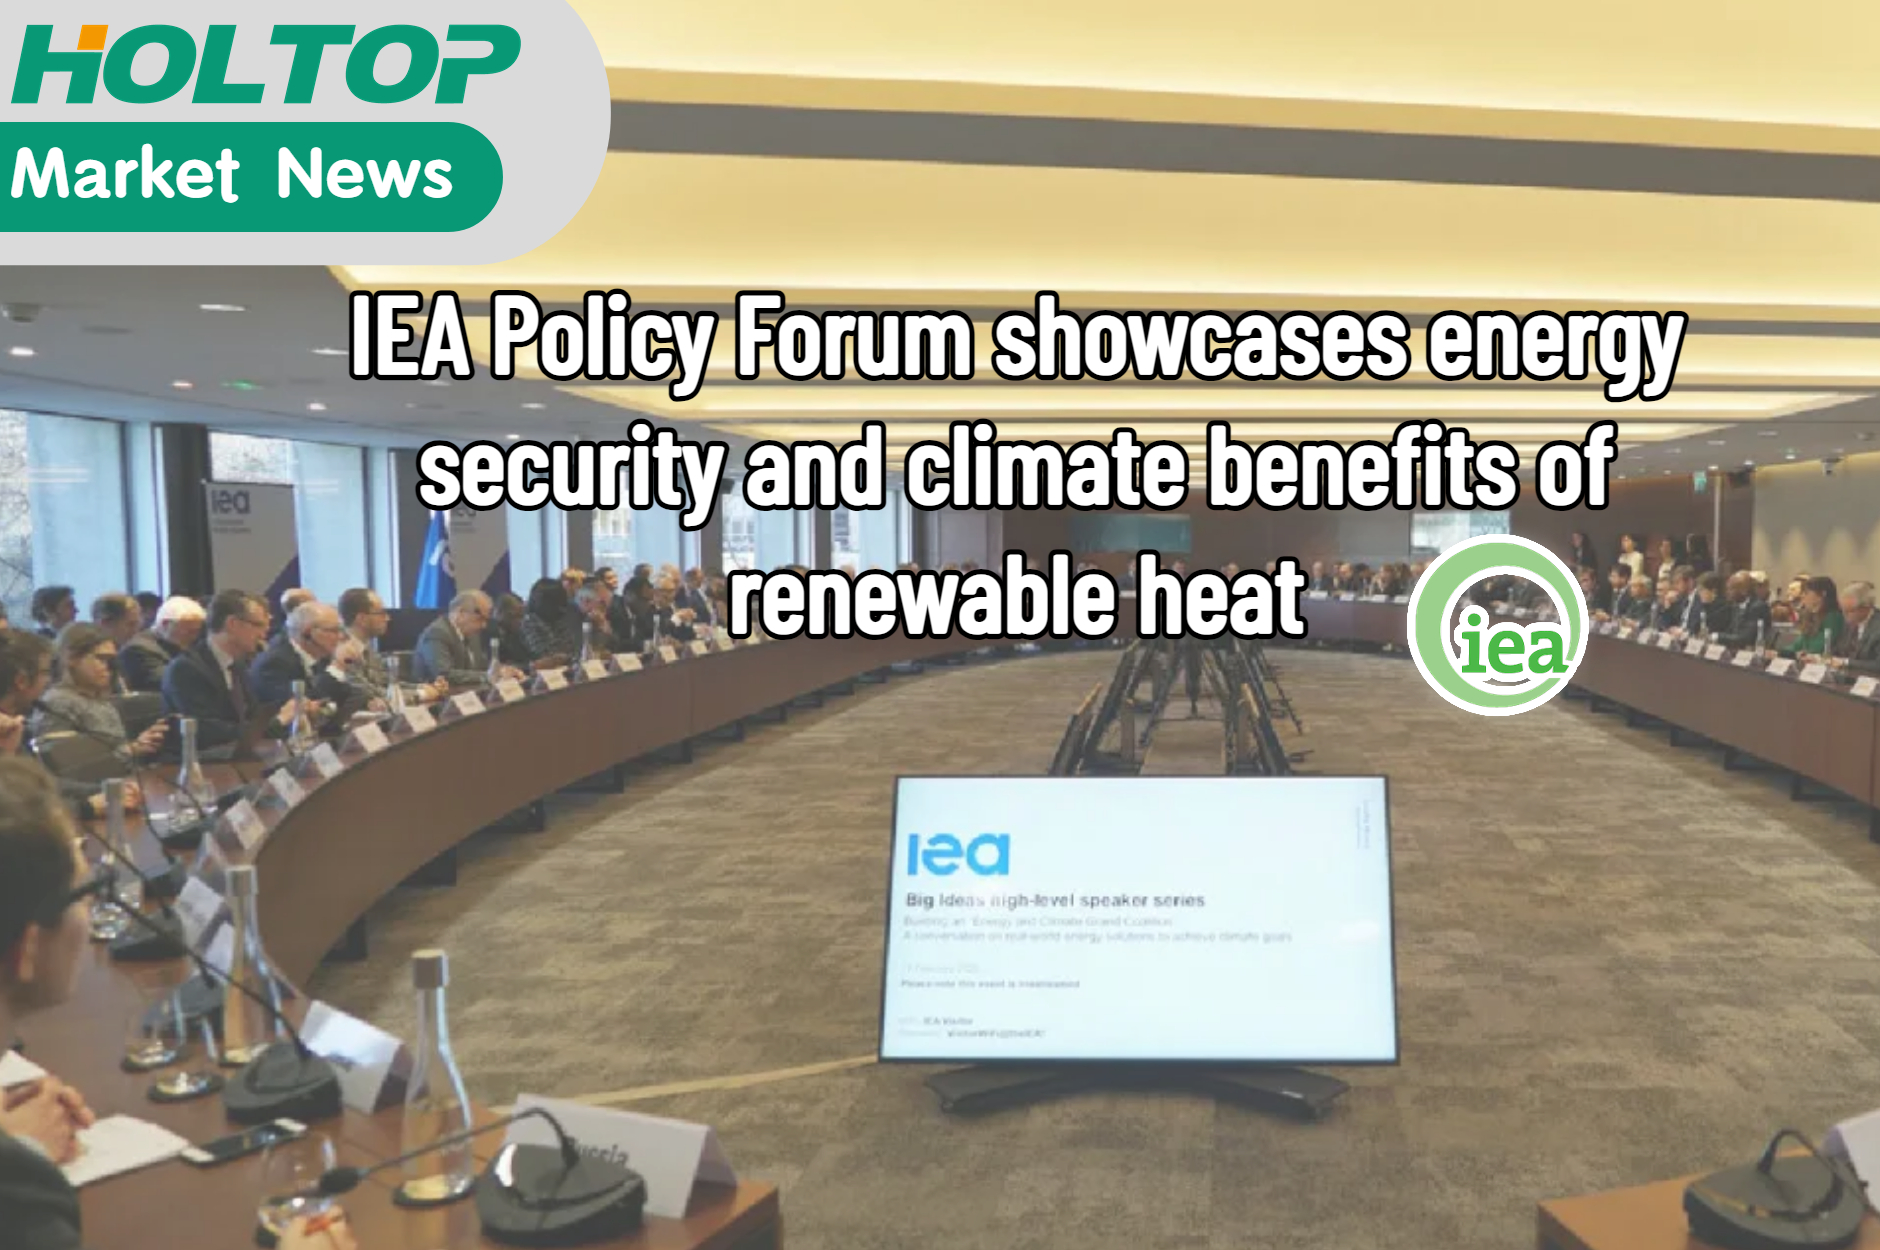 IEA Policy Forum mette in mostra la sicurezza energetica e i benefici climatici del calore rinnovabile